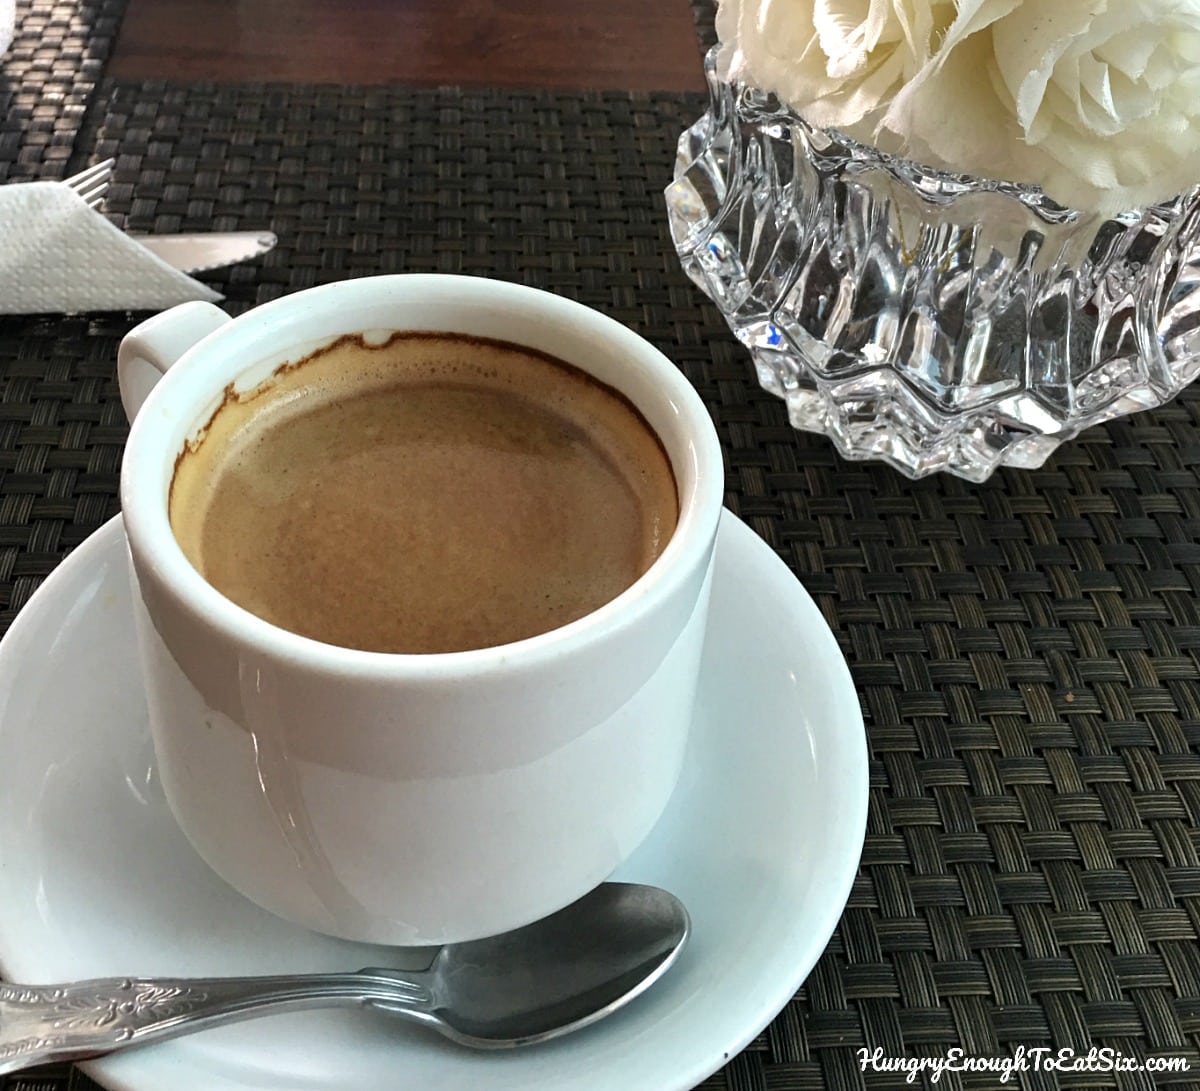 White cup of espresso